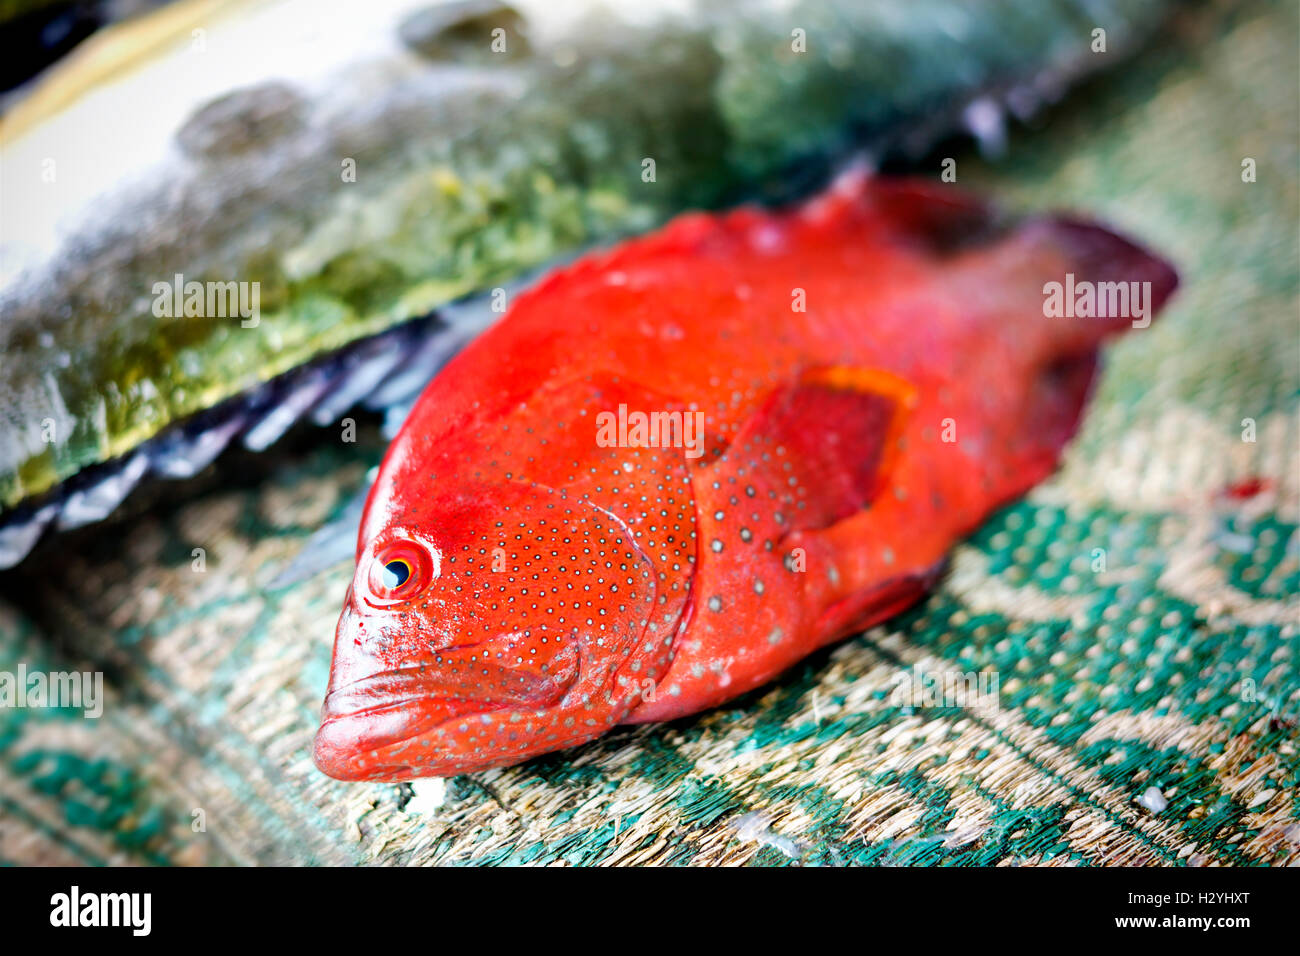 Fresh fish Stock Photo